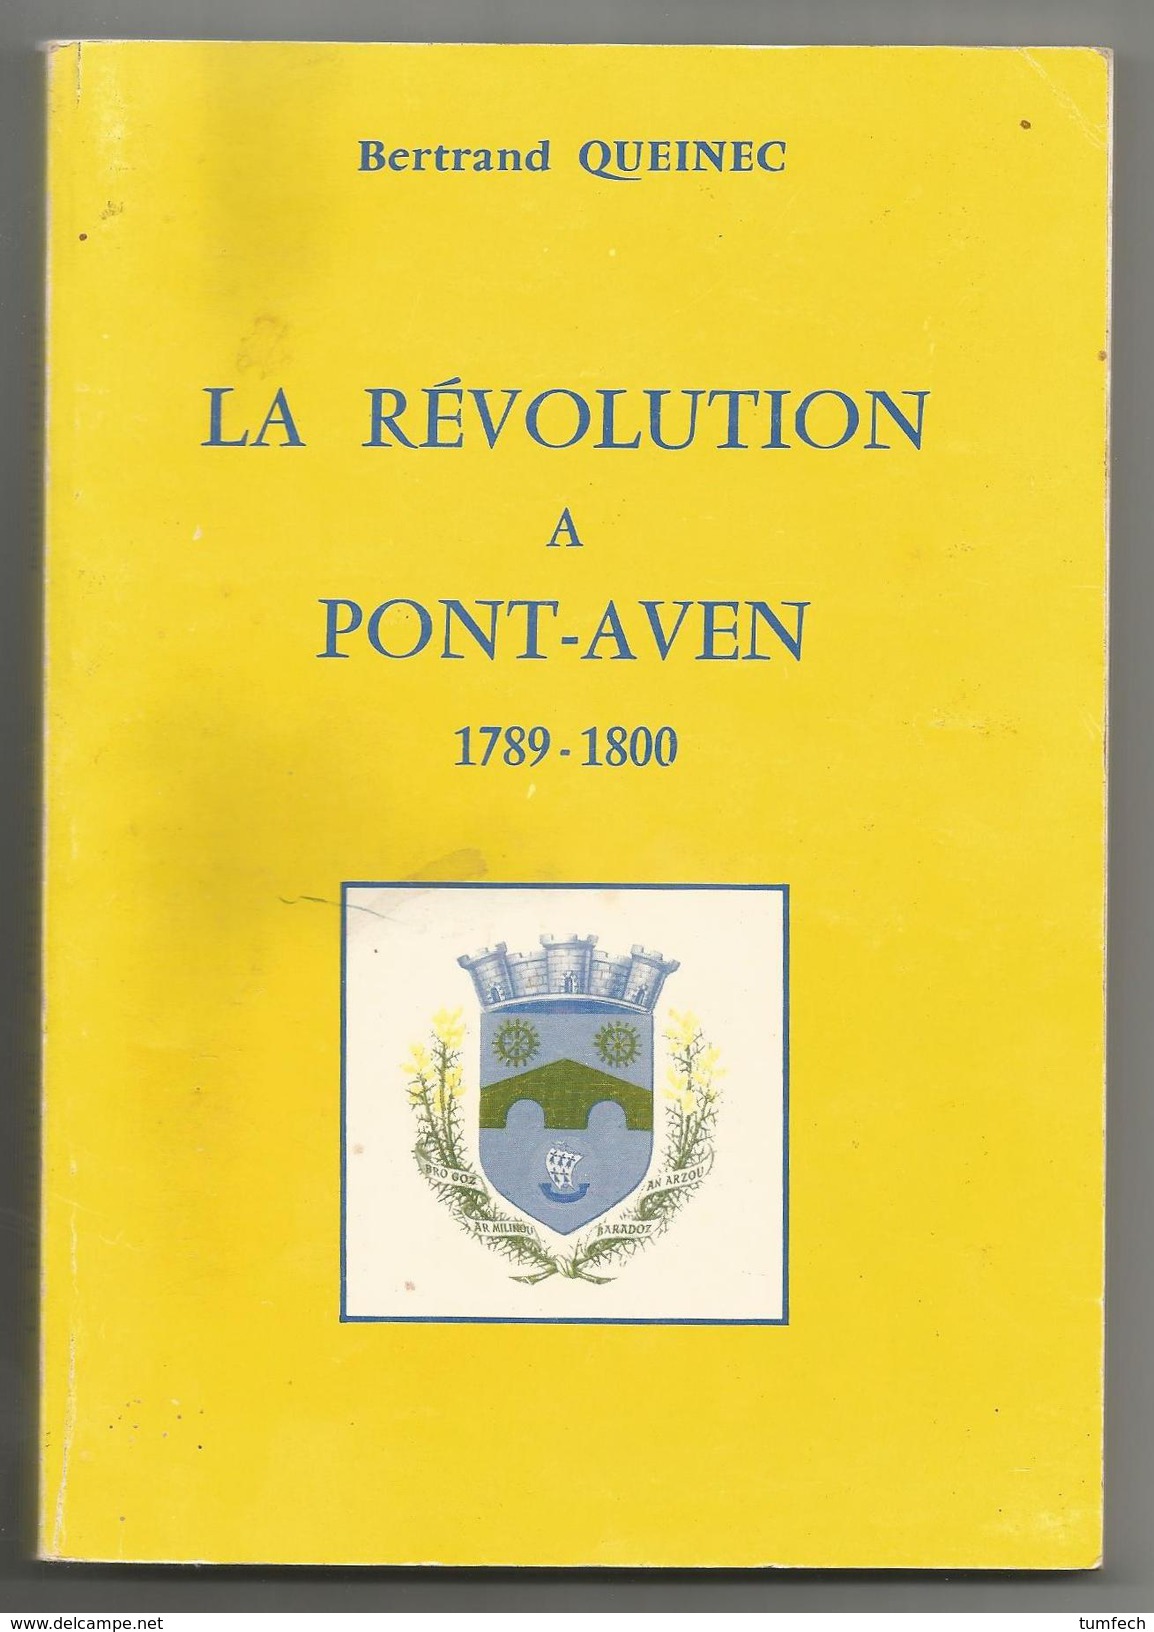 Bertrand Queinec. La Révolution à Pont-Aven. 1789-1800. Bretagne - Bretagne